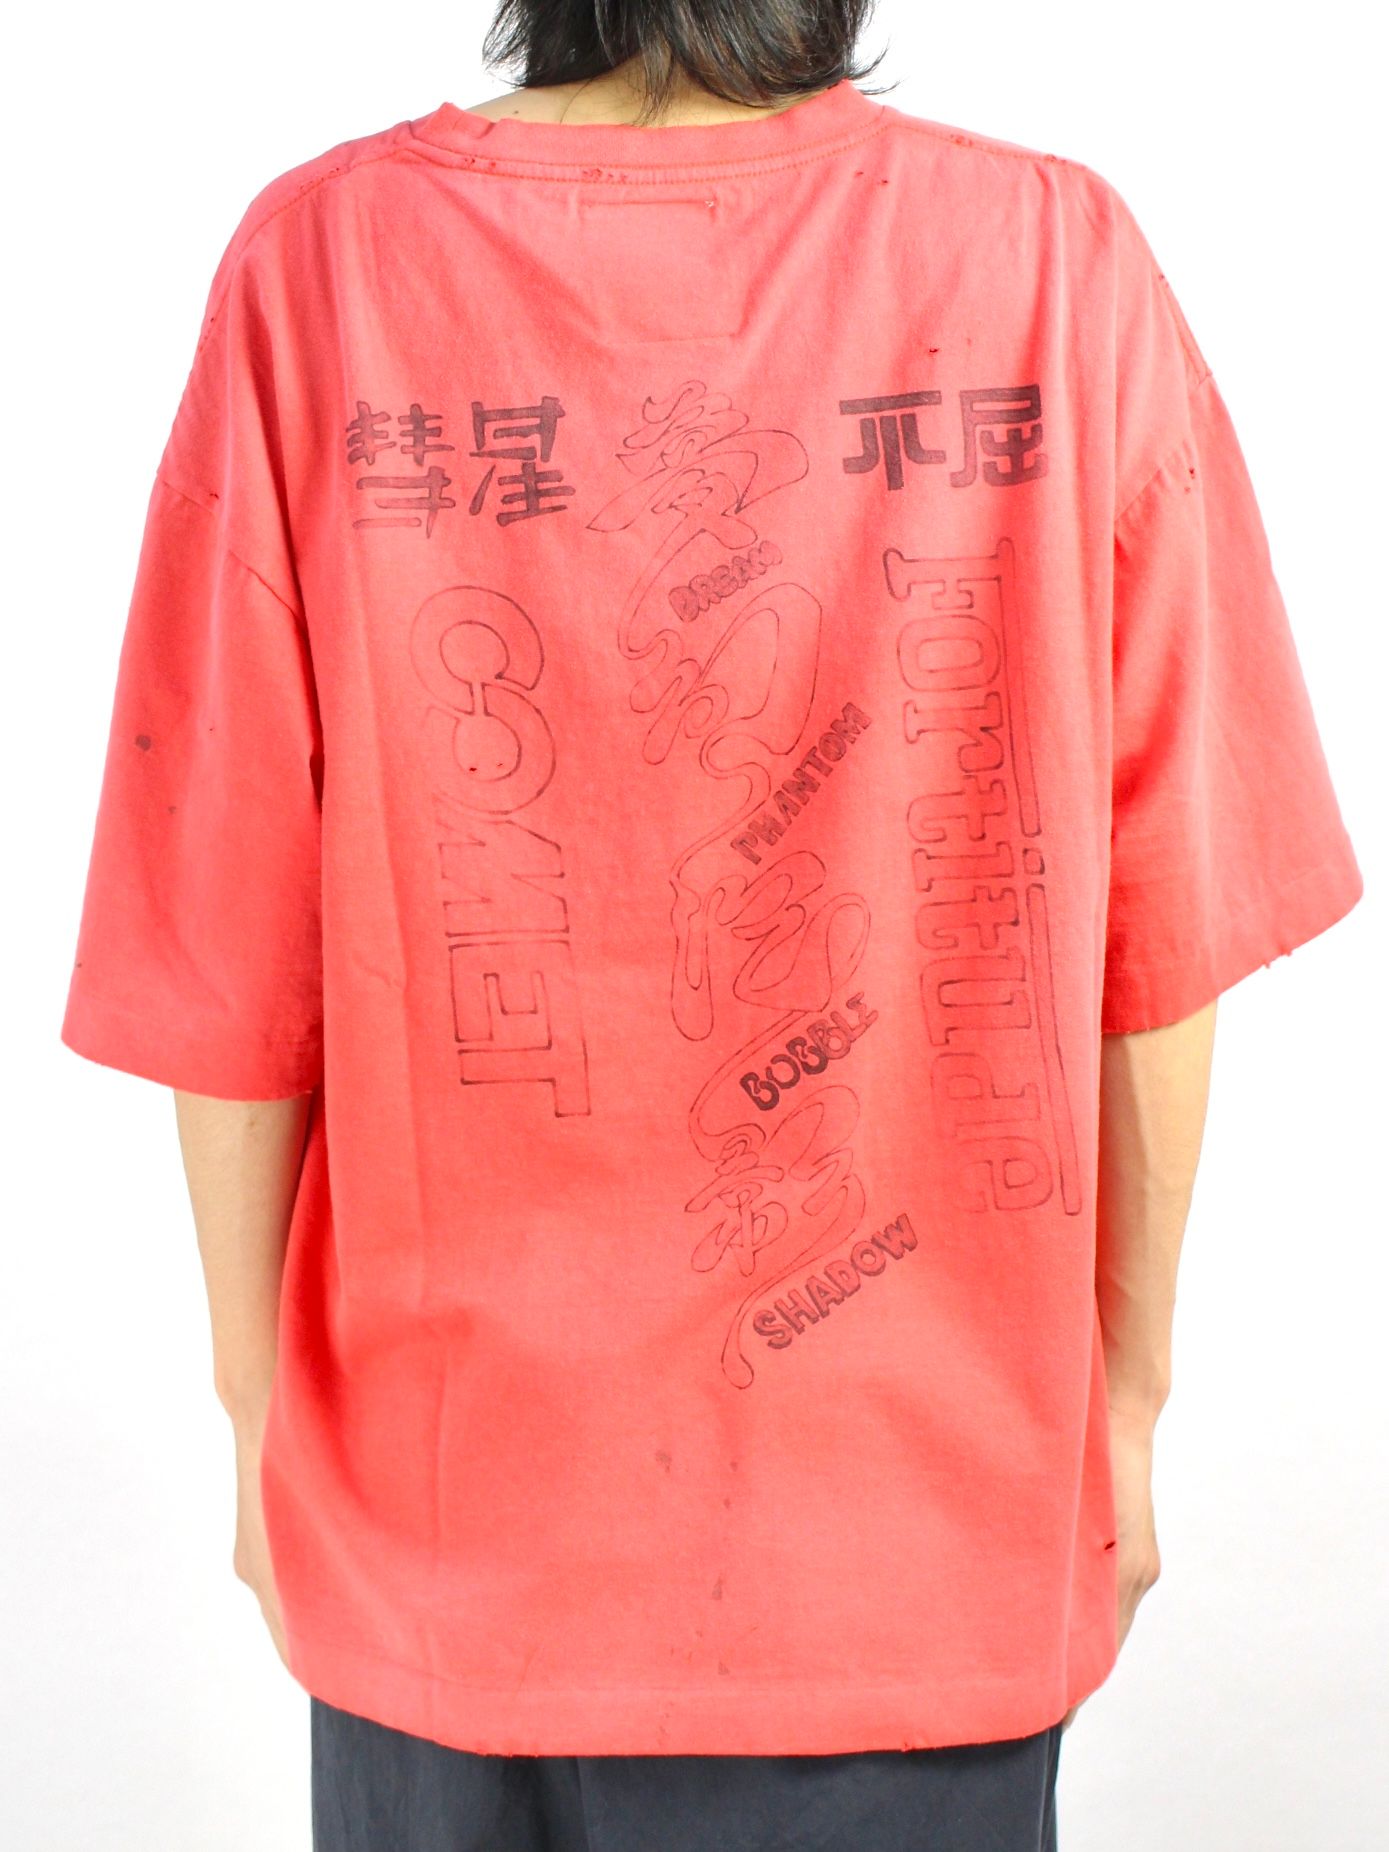 【22SS】ダメージ加工 ディストレスト Tシャツ / DISTRESSED TEE / オレンジ - 44(XS) - オレンジ